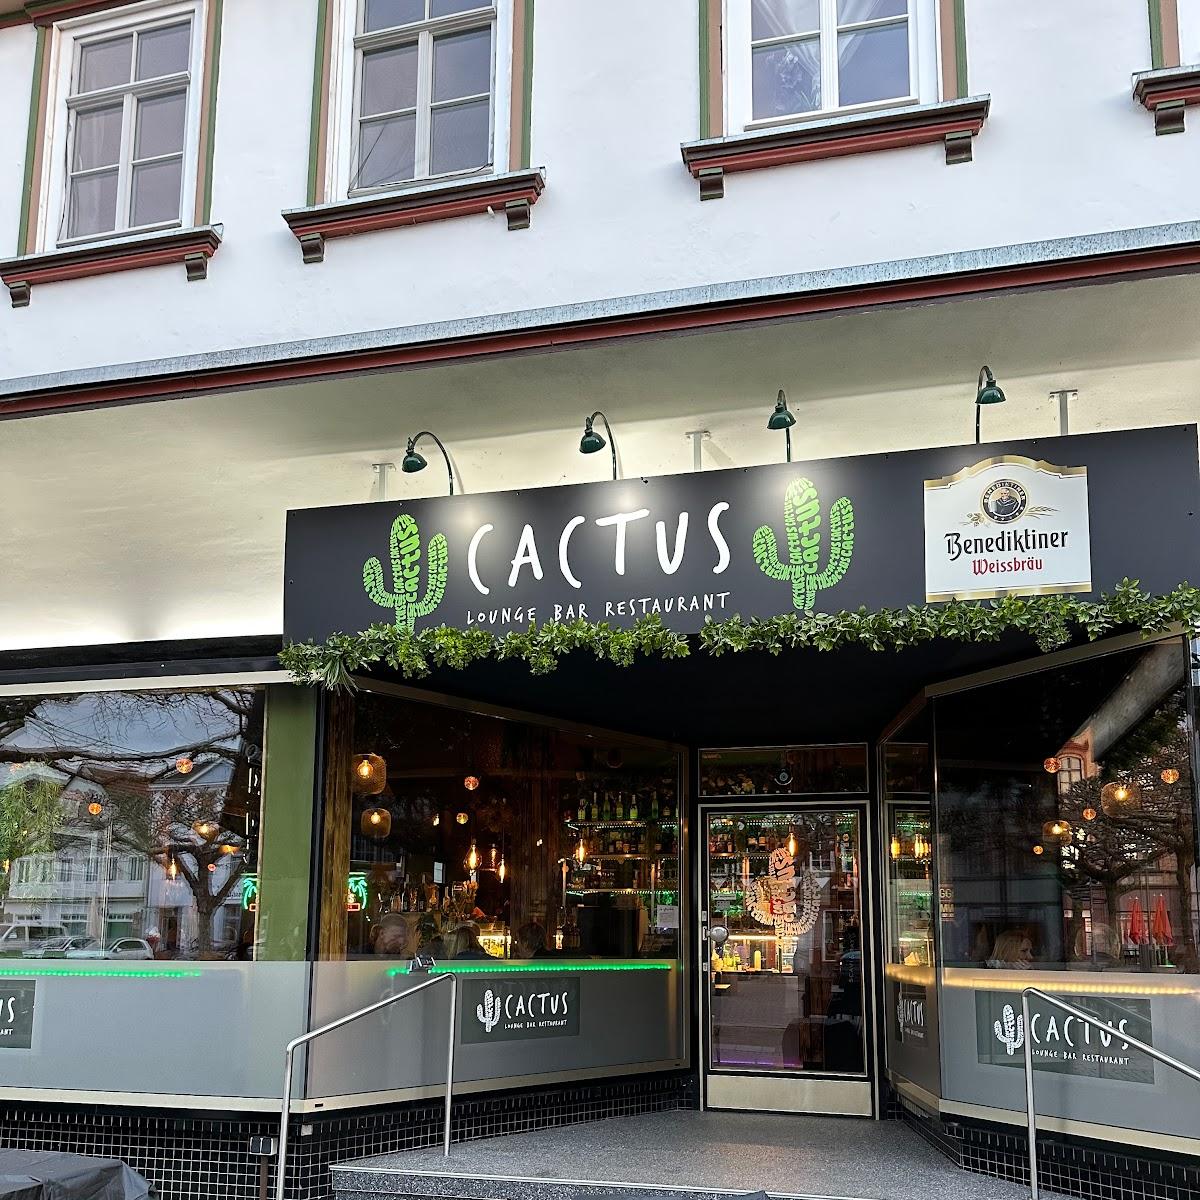 Restaurant "Cactus - Lounge, Bar und Restaurant" in Holzminden